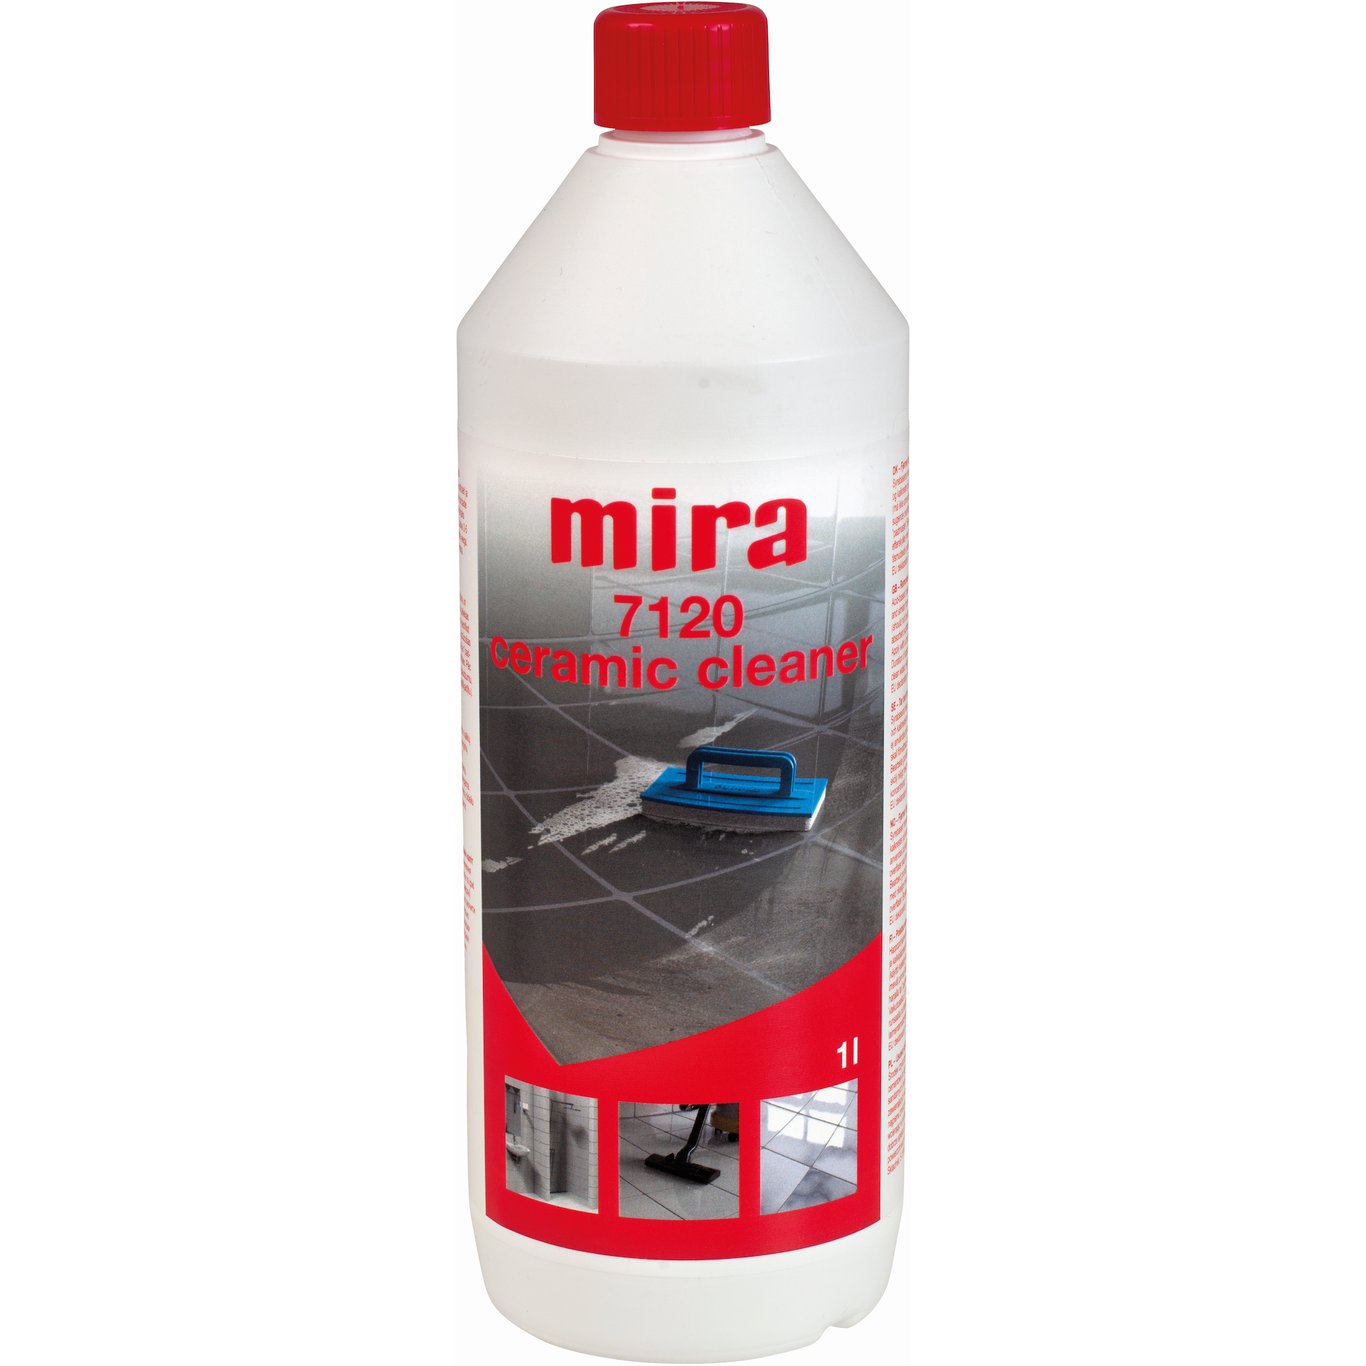 MIRA 7120 CERAMIC CLEANER